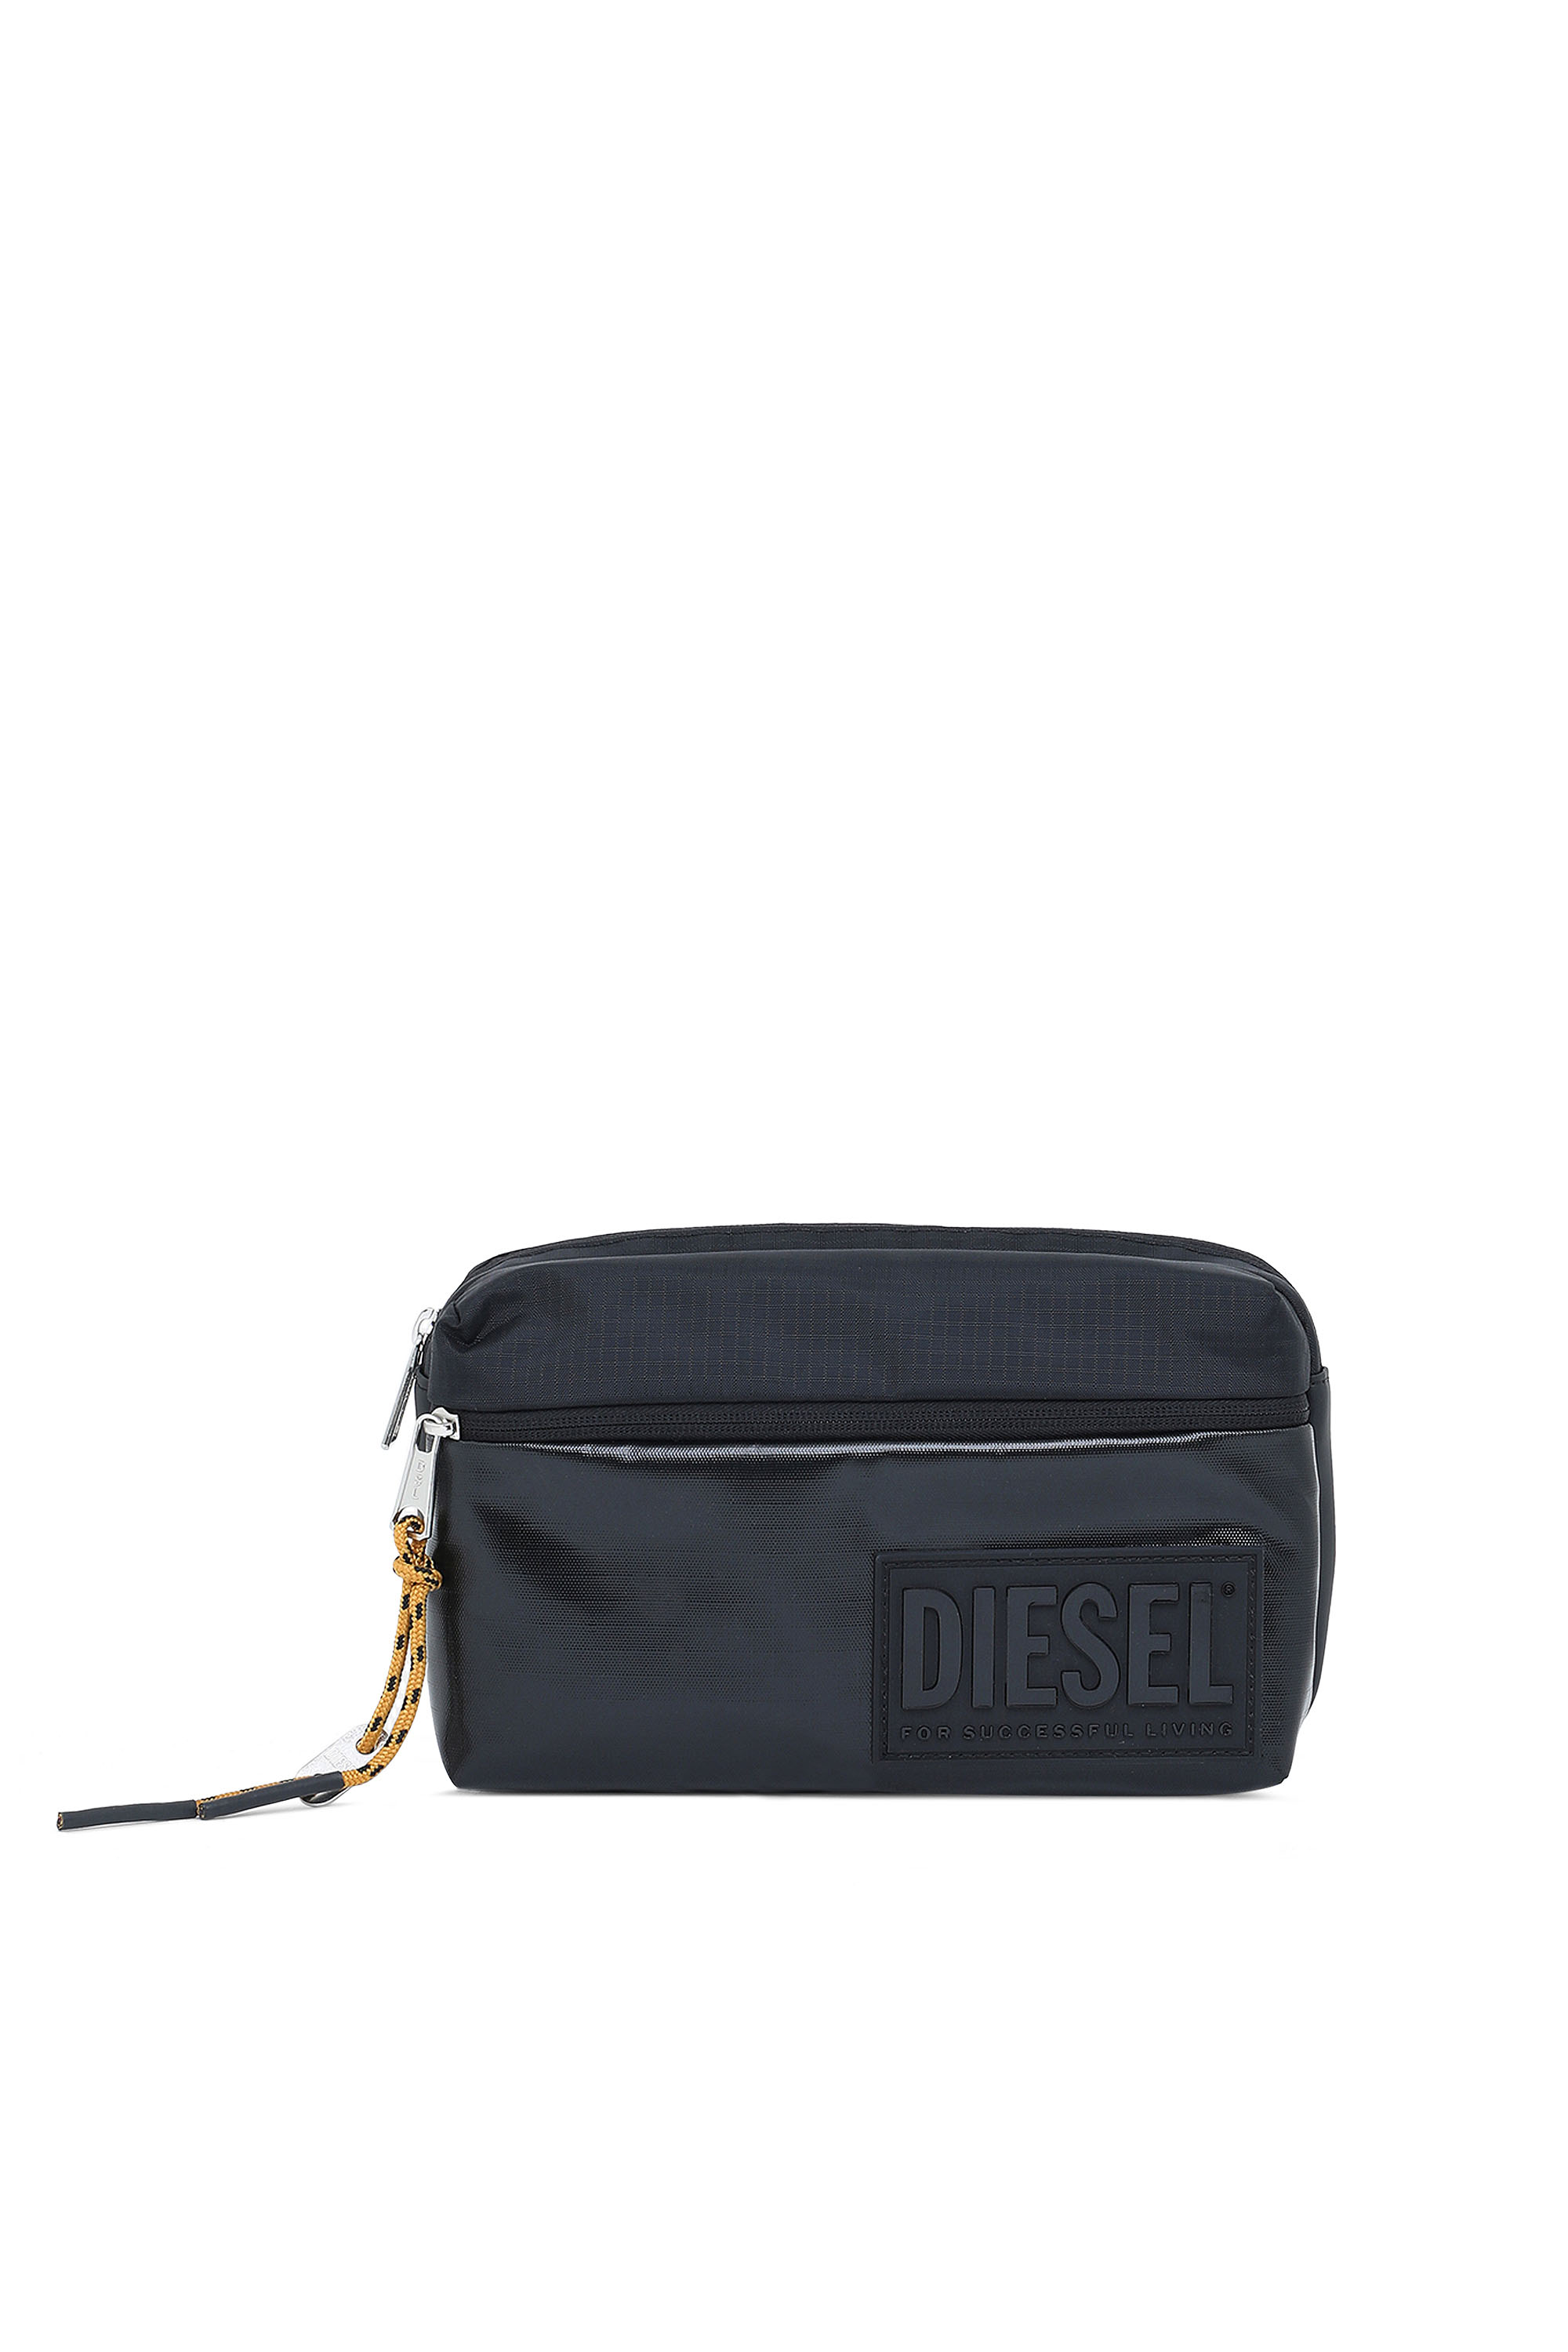 Diesel - BELTYO, Black - Image 1